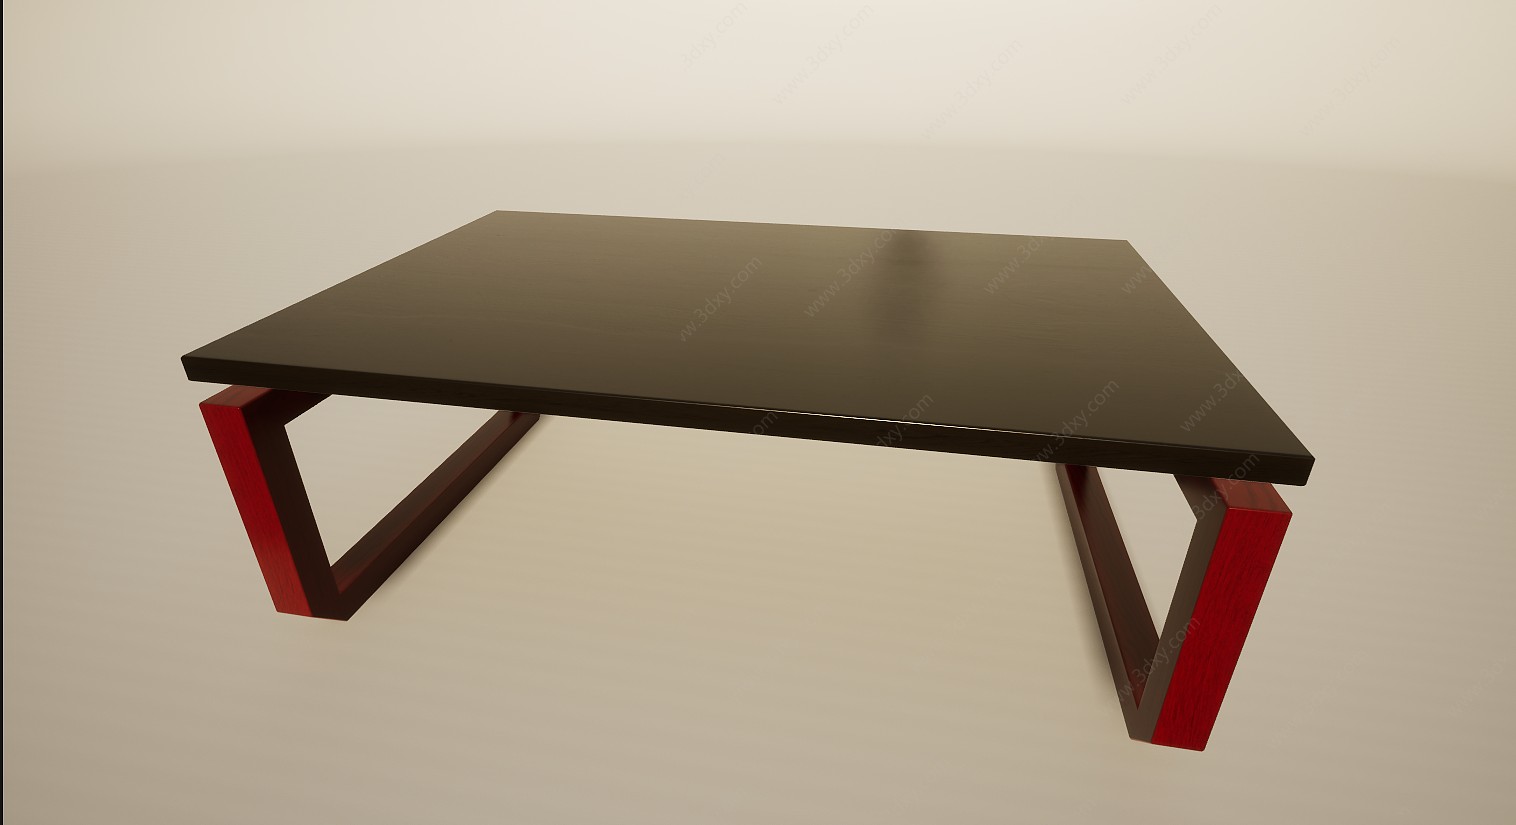 阳台飘窗榻榻米小桌子炕桌3D模型